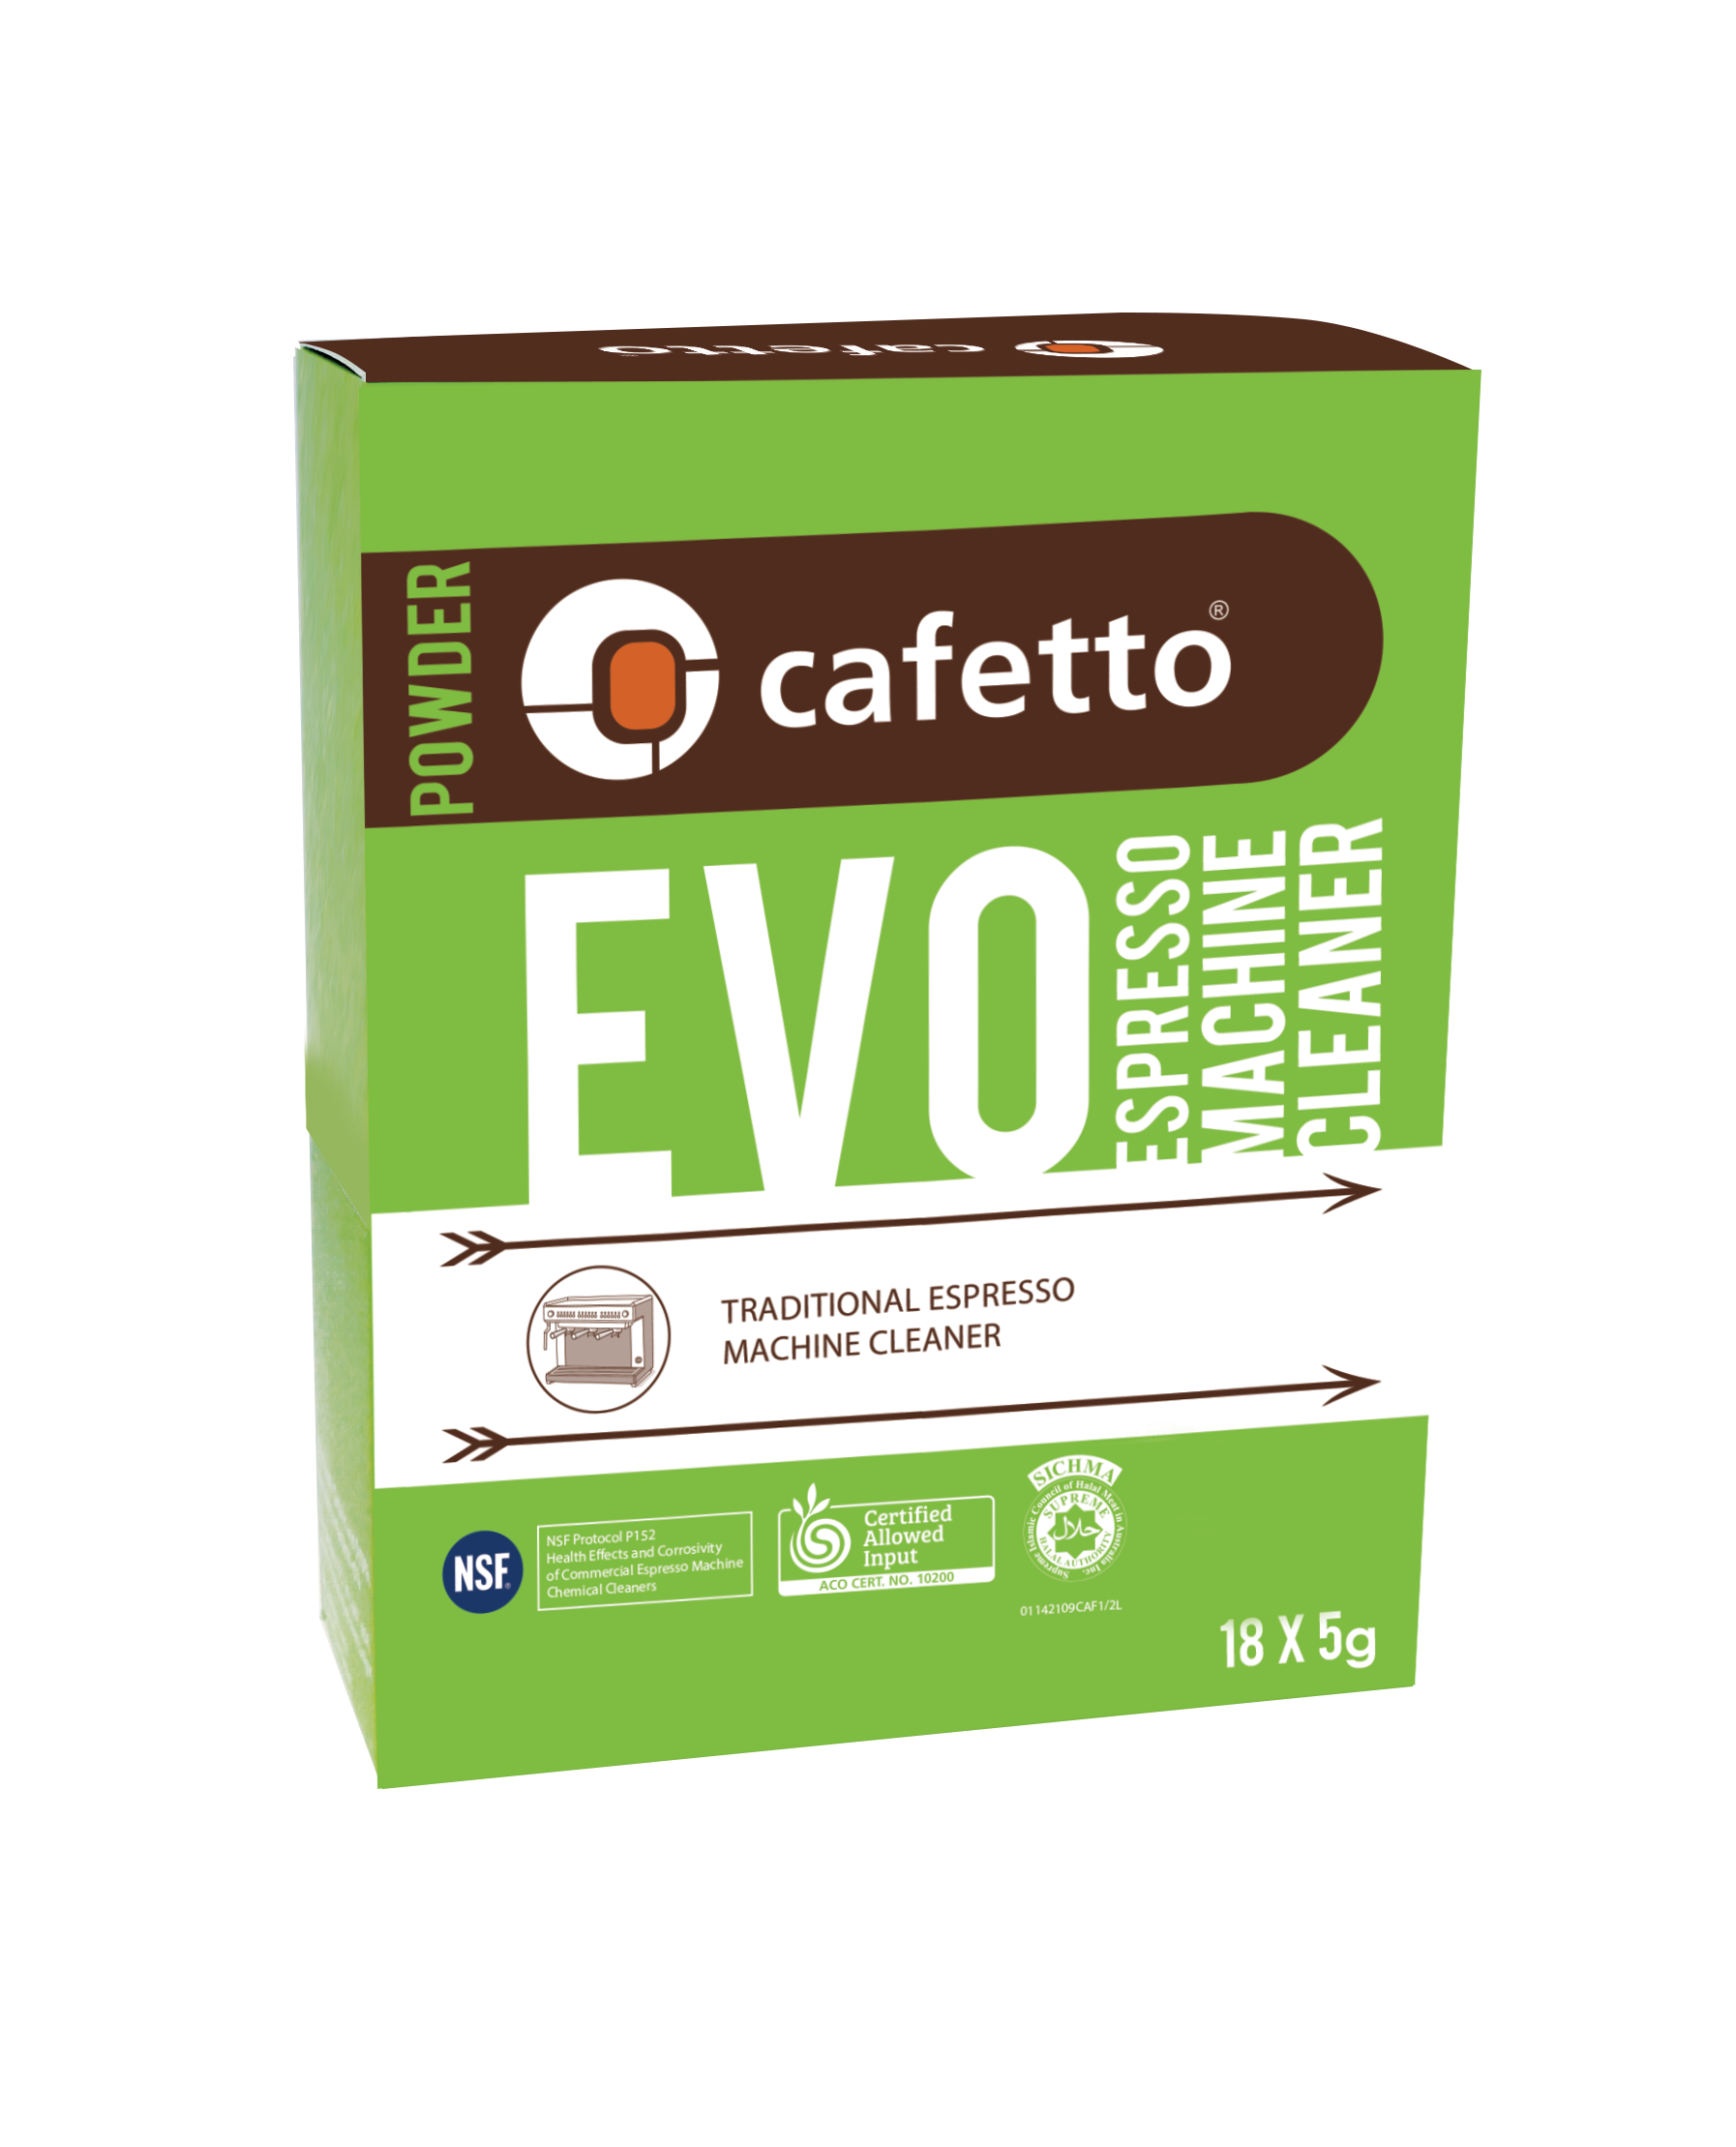 Detergent pudra organic CAFETTO EVO Sachets, pentru igienizarea espressoarelor tip office, Cutie 18 Plicuri x 5g